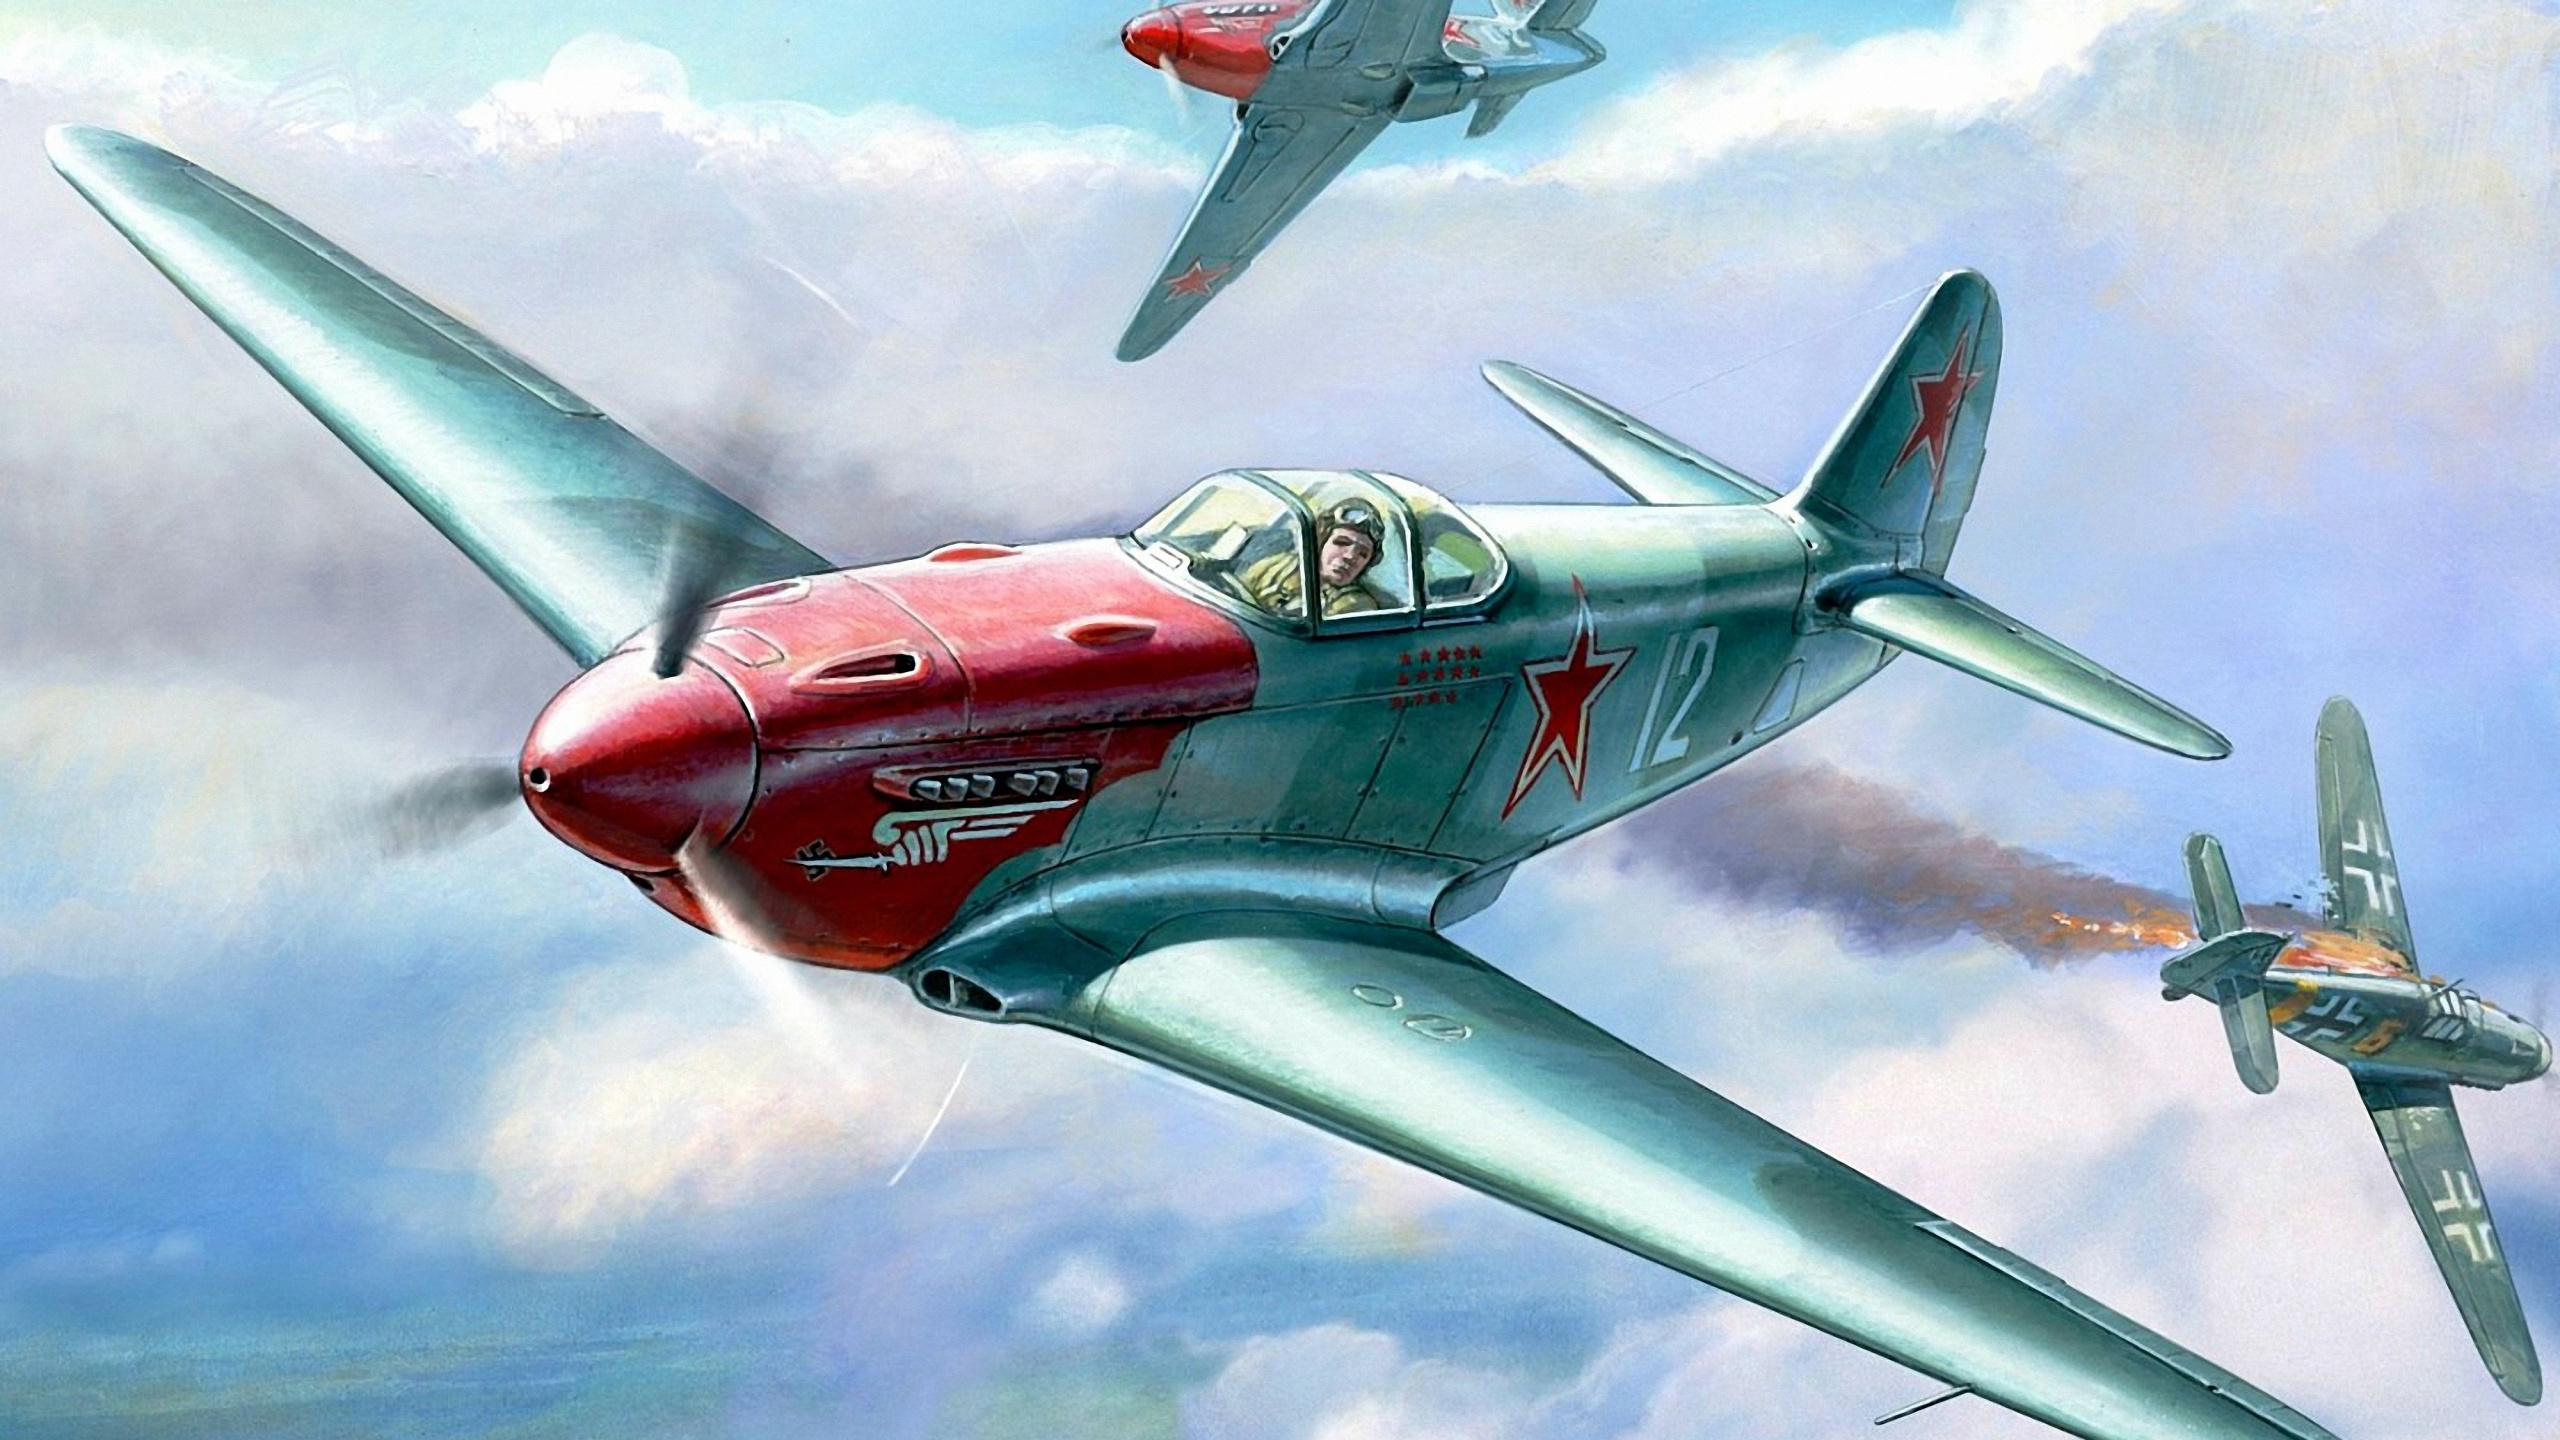 Avión a Reacción Rojo y Gris en el Aire.. Wallpaper in 2560x1440 Resolution